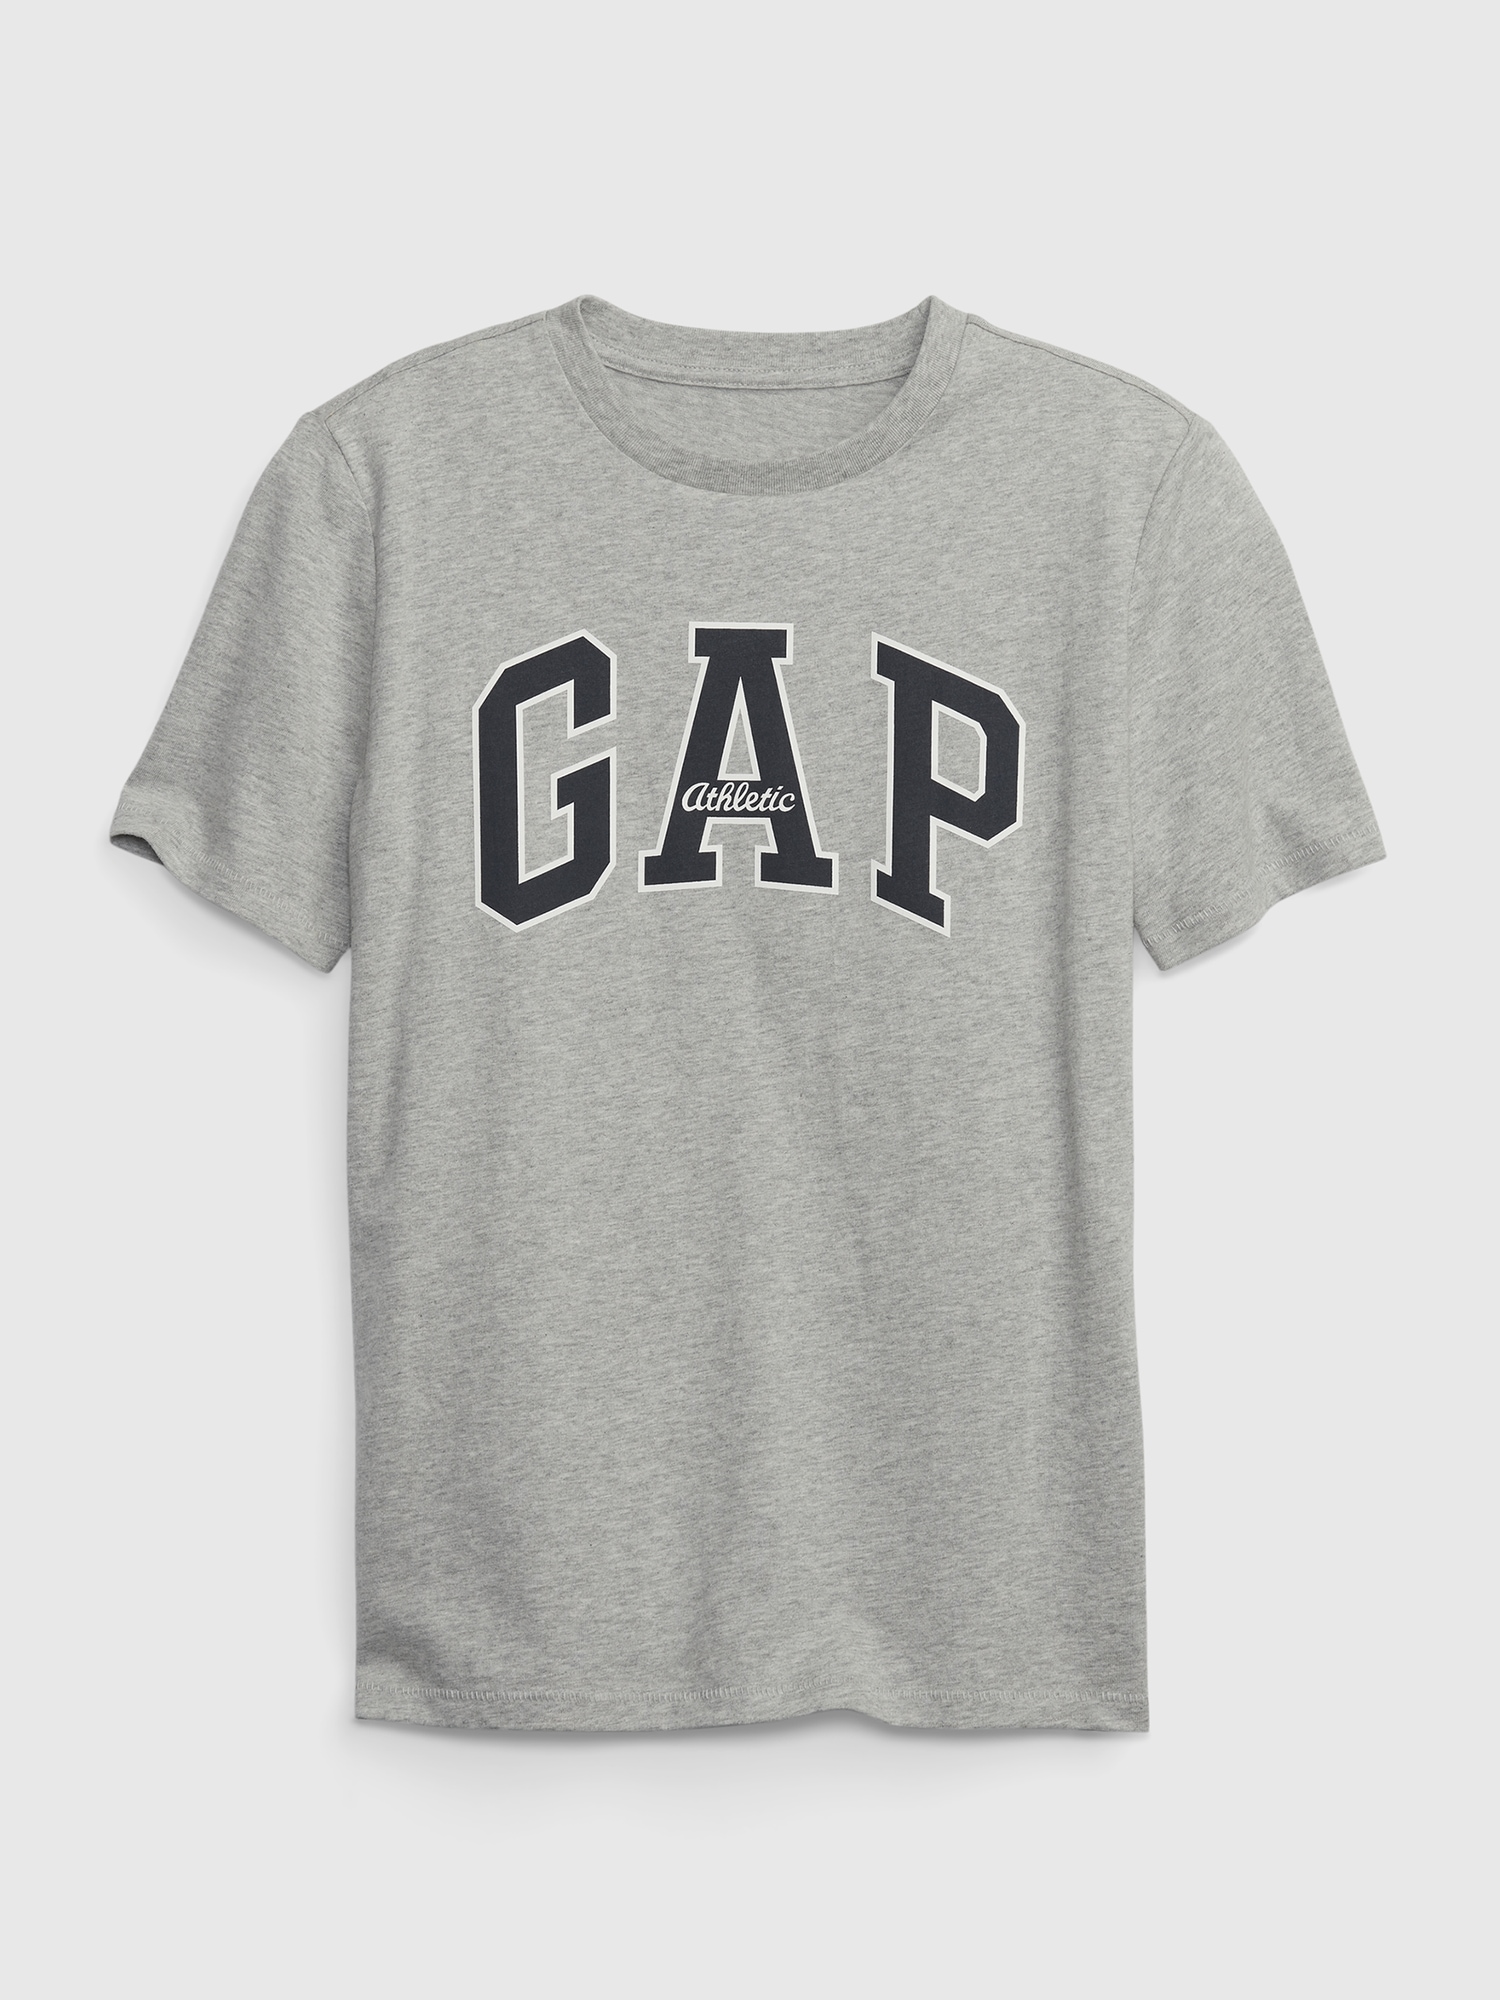 methane Sure lightweight Kids 100% Organic Cotton Gap Logo T-Shirt | Gap